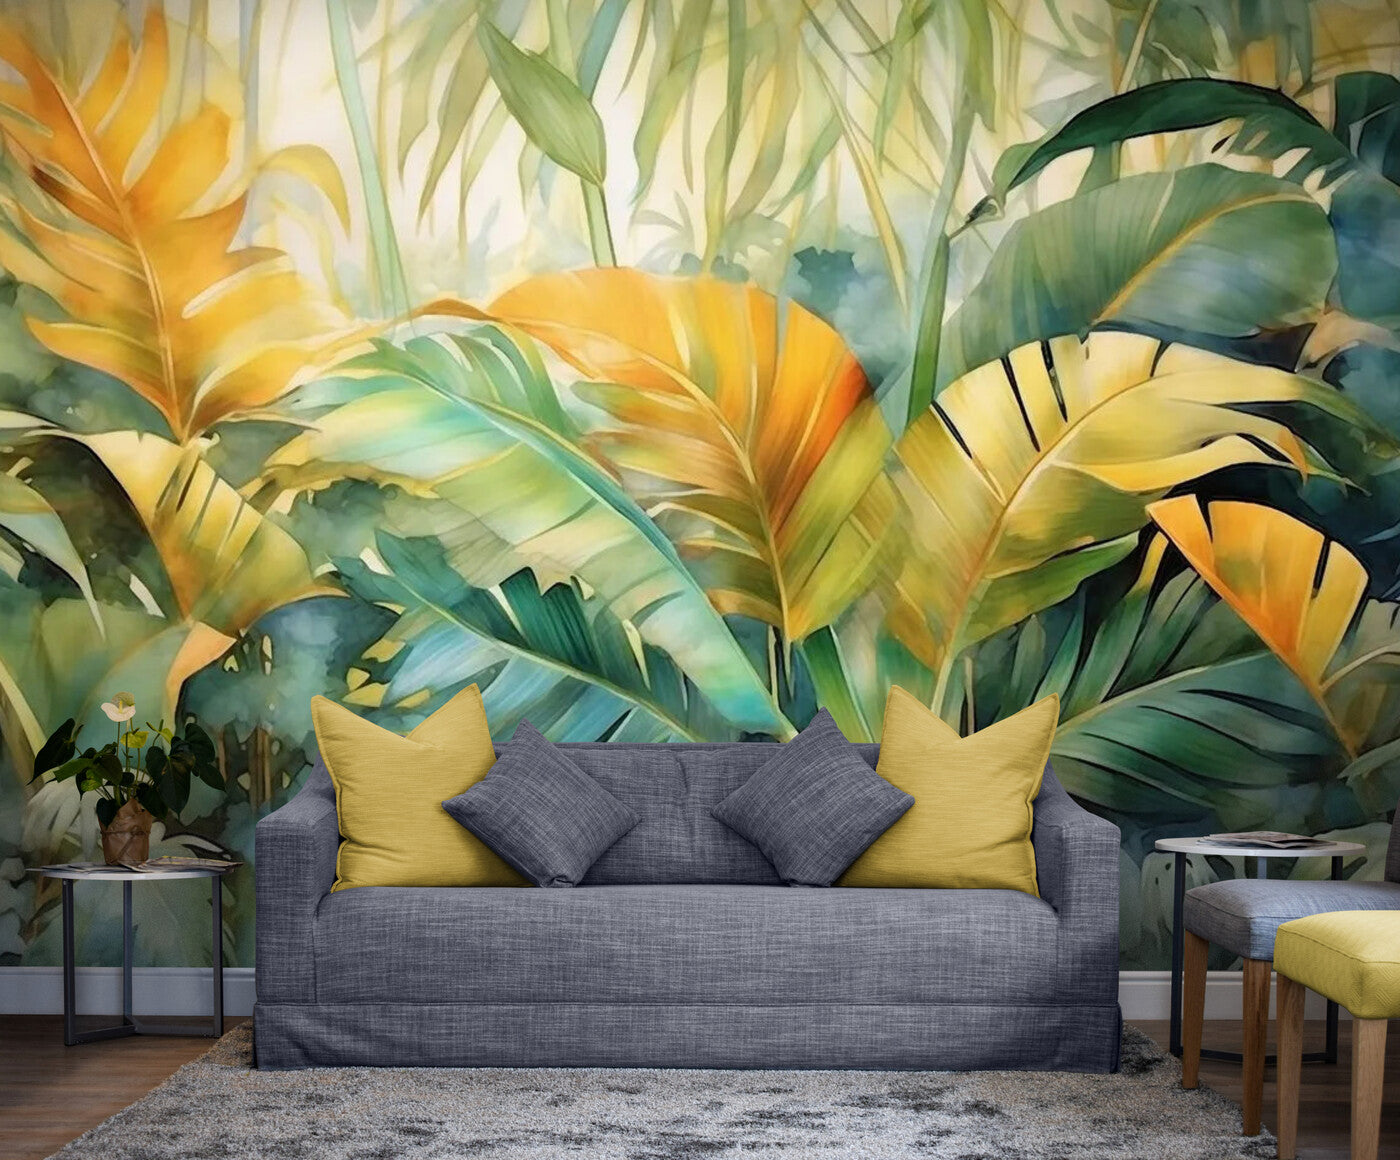 Papier peint panoramique jungle tropicale